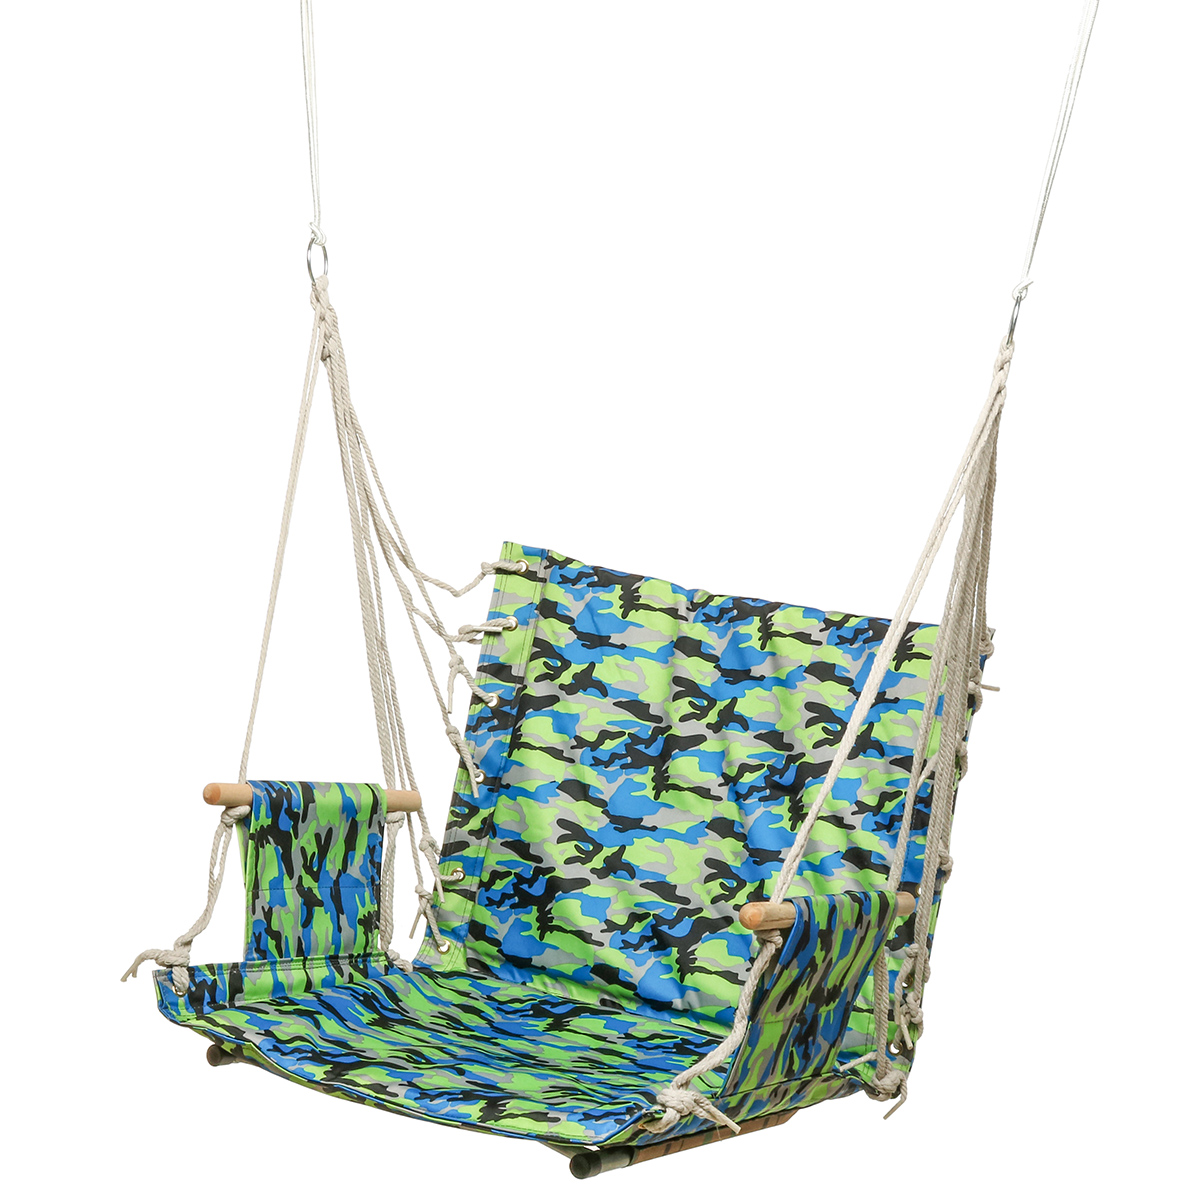 Outdoor-Hanging-Chair-Swinging-Hammock-Thicken-Rope-Swing-Seat-For-Home-Indoor-Outdoor-Backyard-Gard-1706887-8